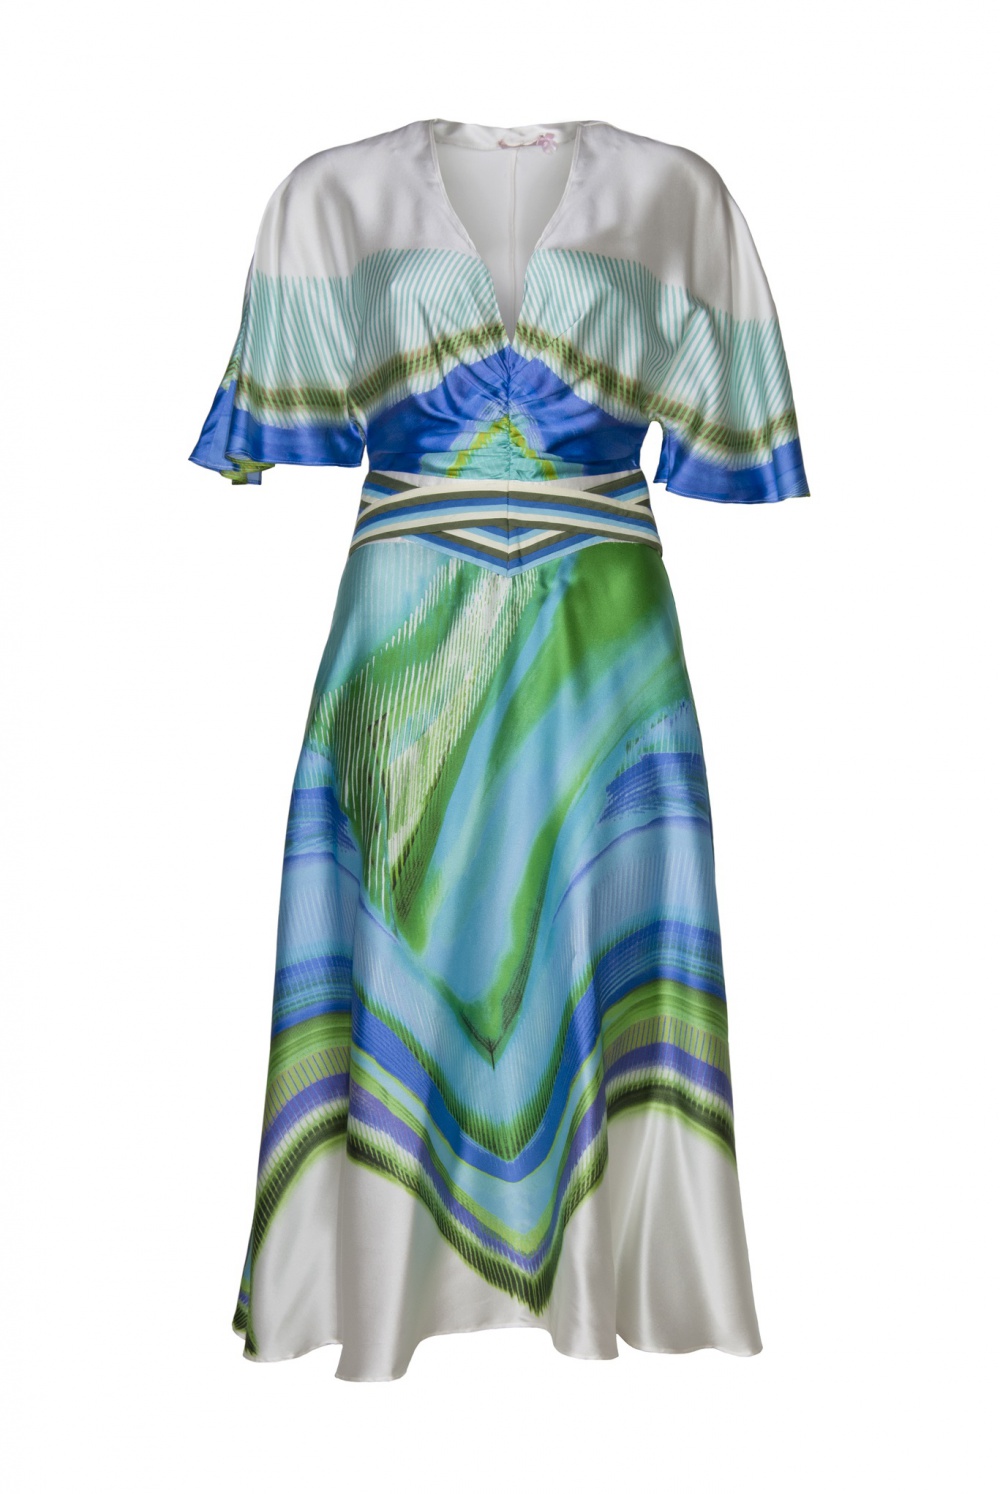 Шелковое платье Aurelia-Aurita от Юлии Далакян, 40-44 размер